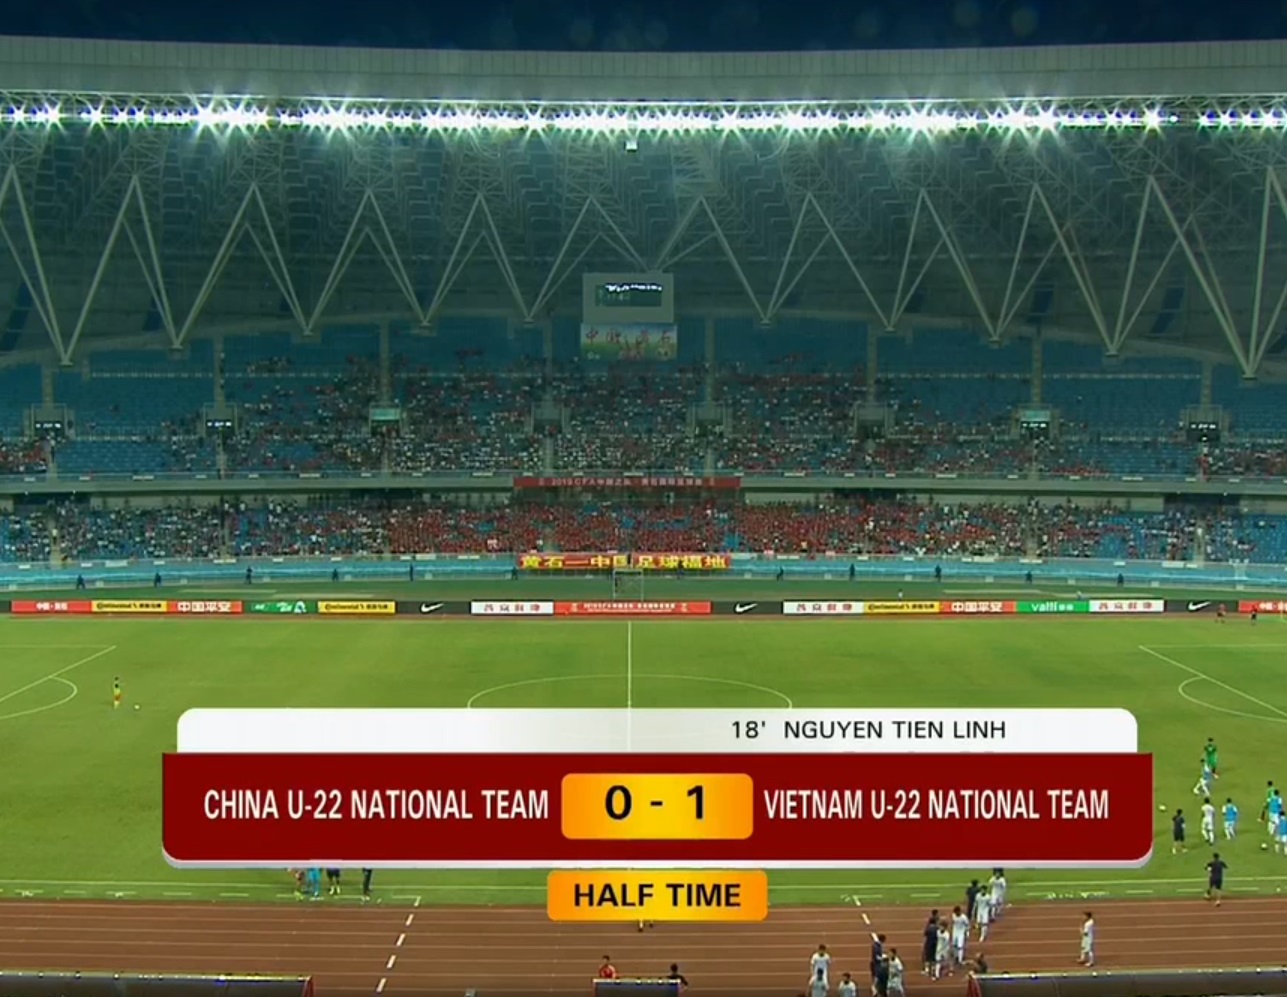 Kết quả U22 Việt Nam vs U22 Trung Quốc (FT: 2-0): Tiến Linh tỏa sáng với cú đúp